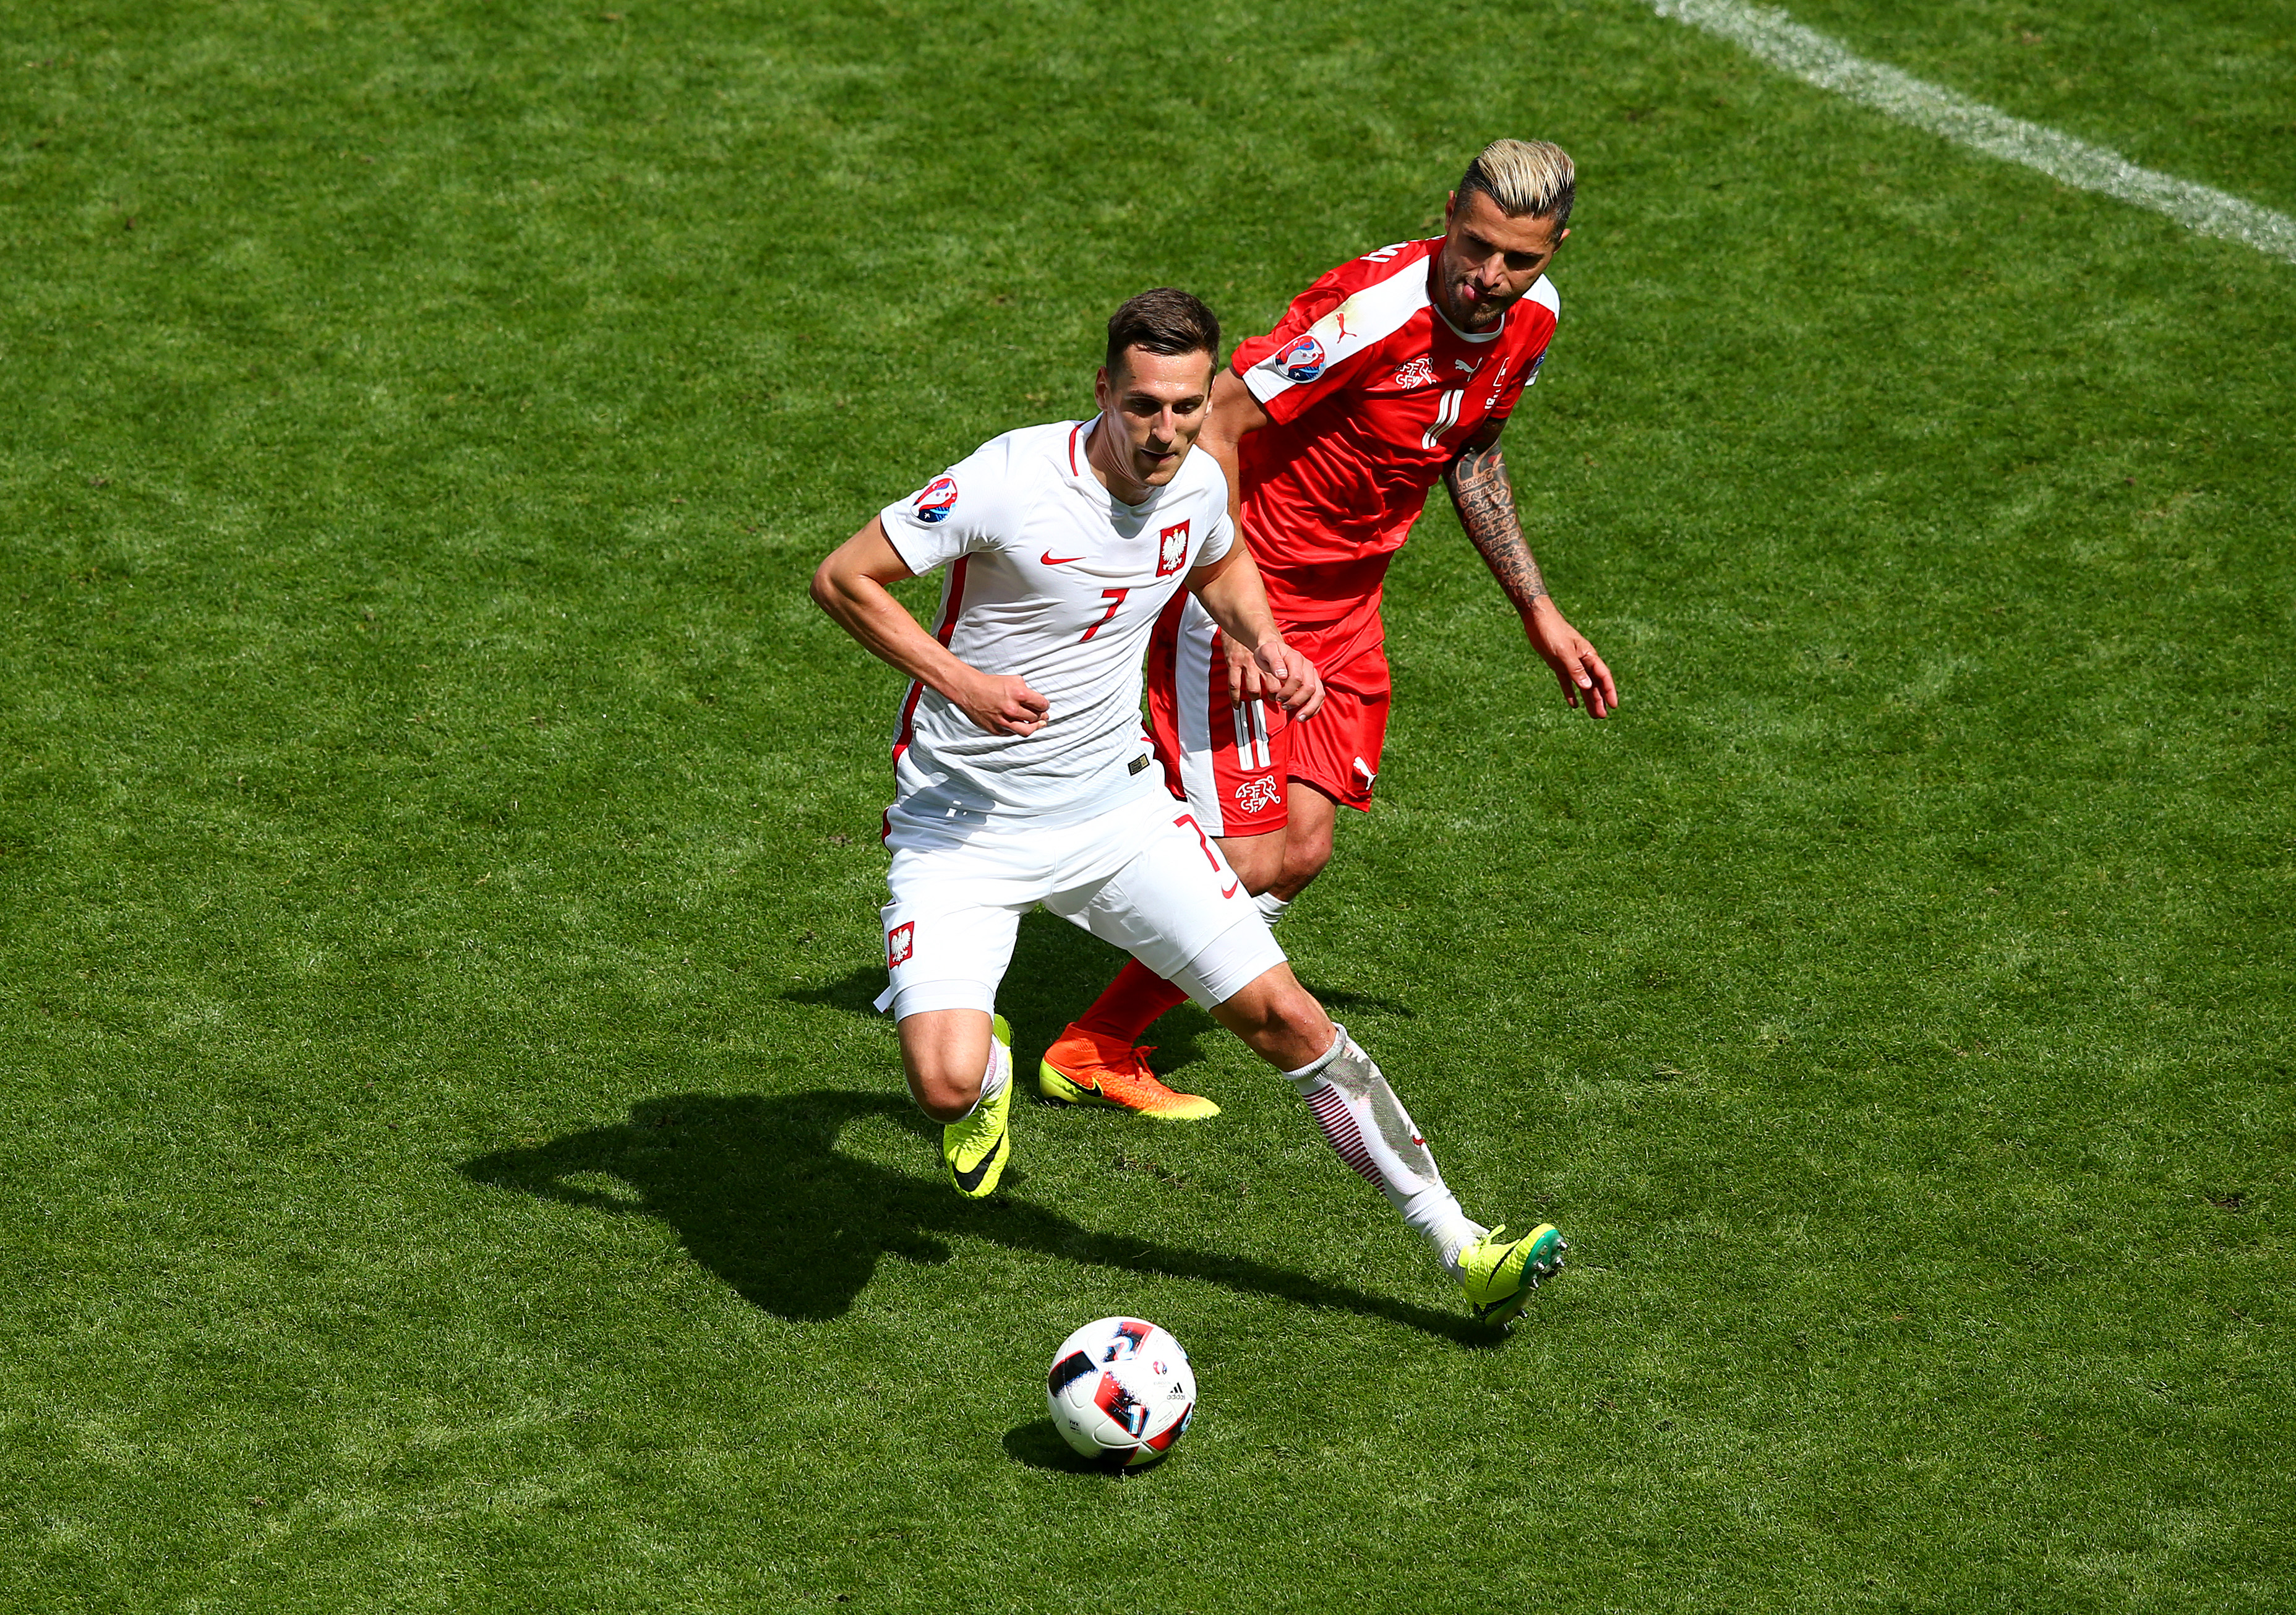 Switzerland v Poland - Round of 16: UEFA Euro 2016